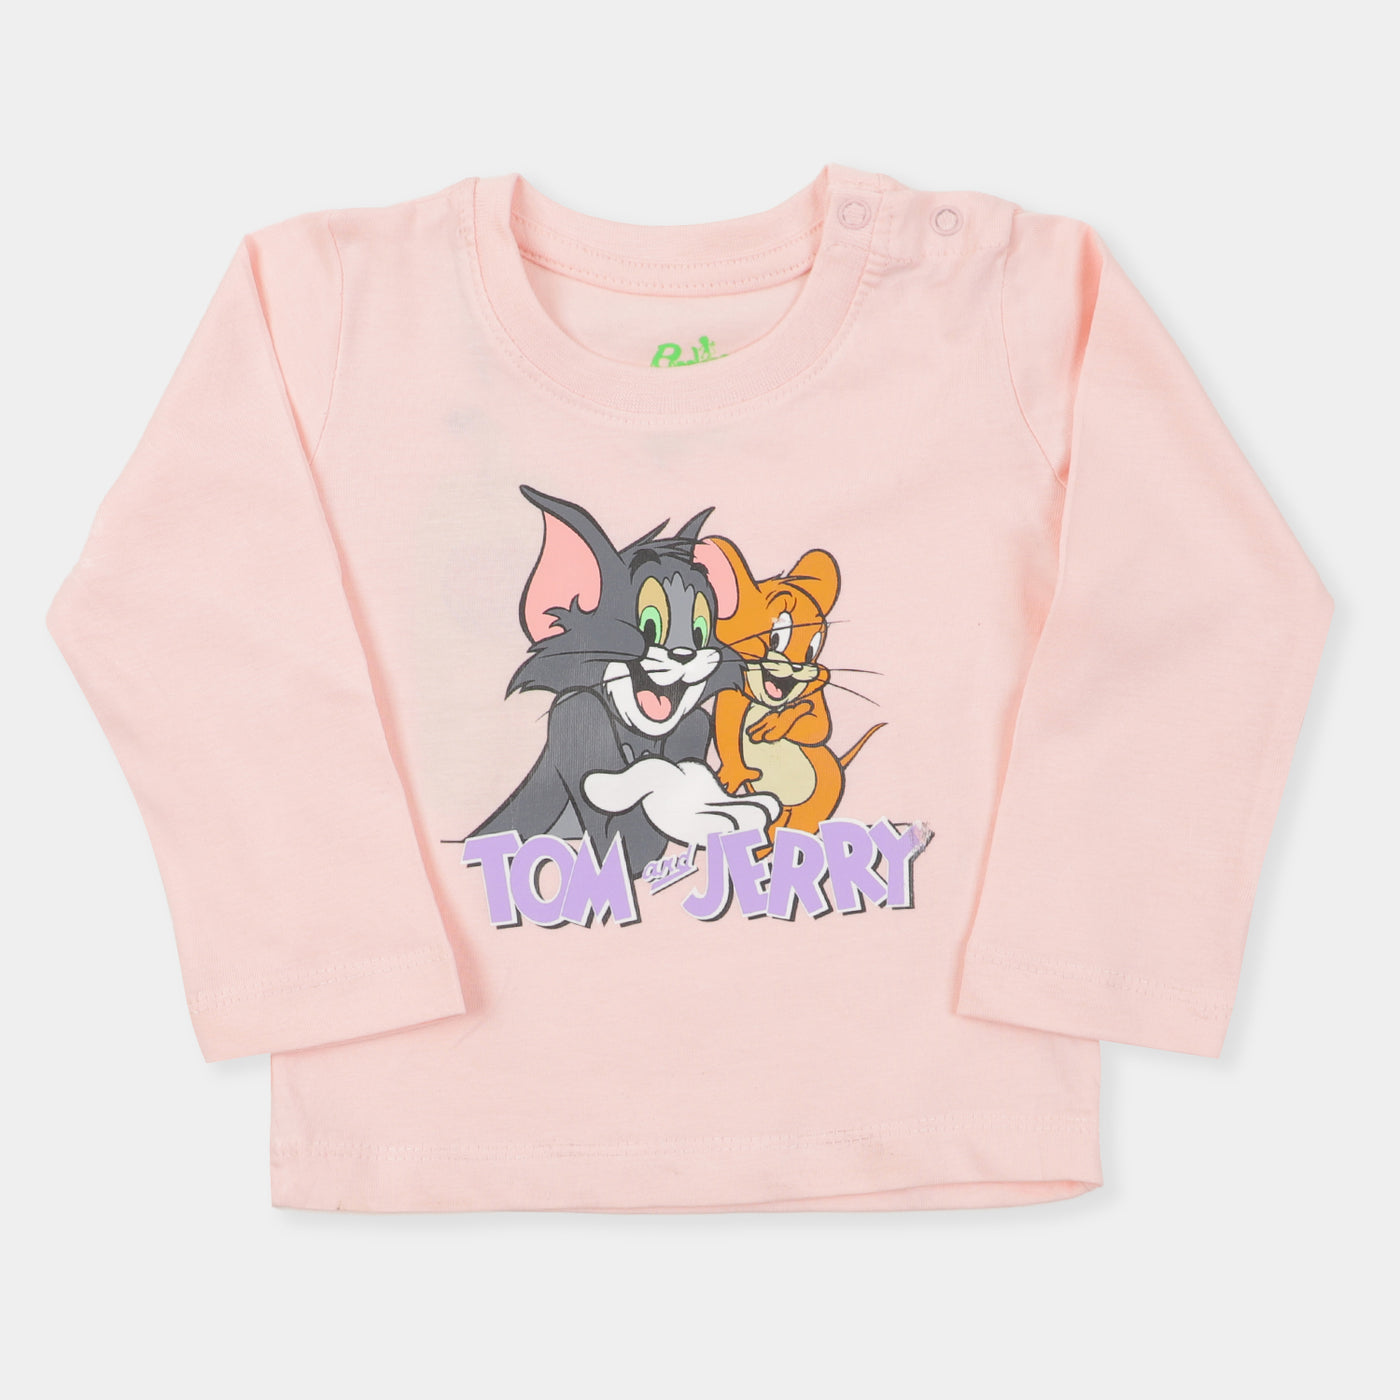 Infant Girls T-Shirt Character - Light Peach